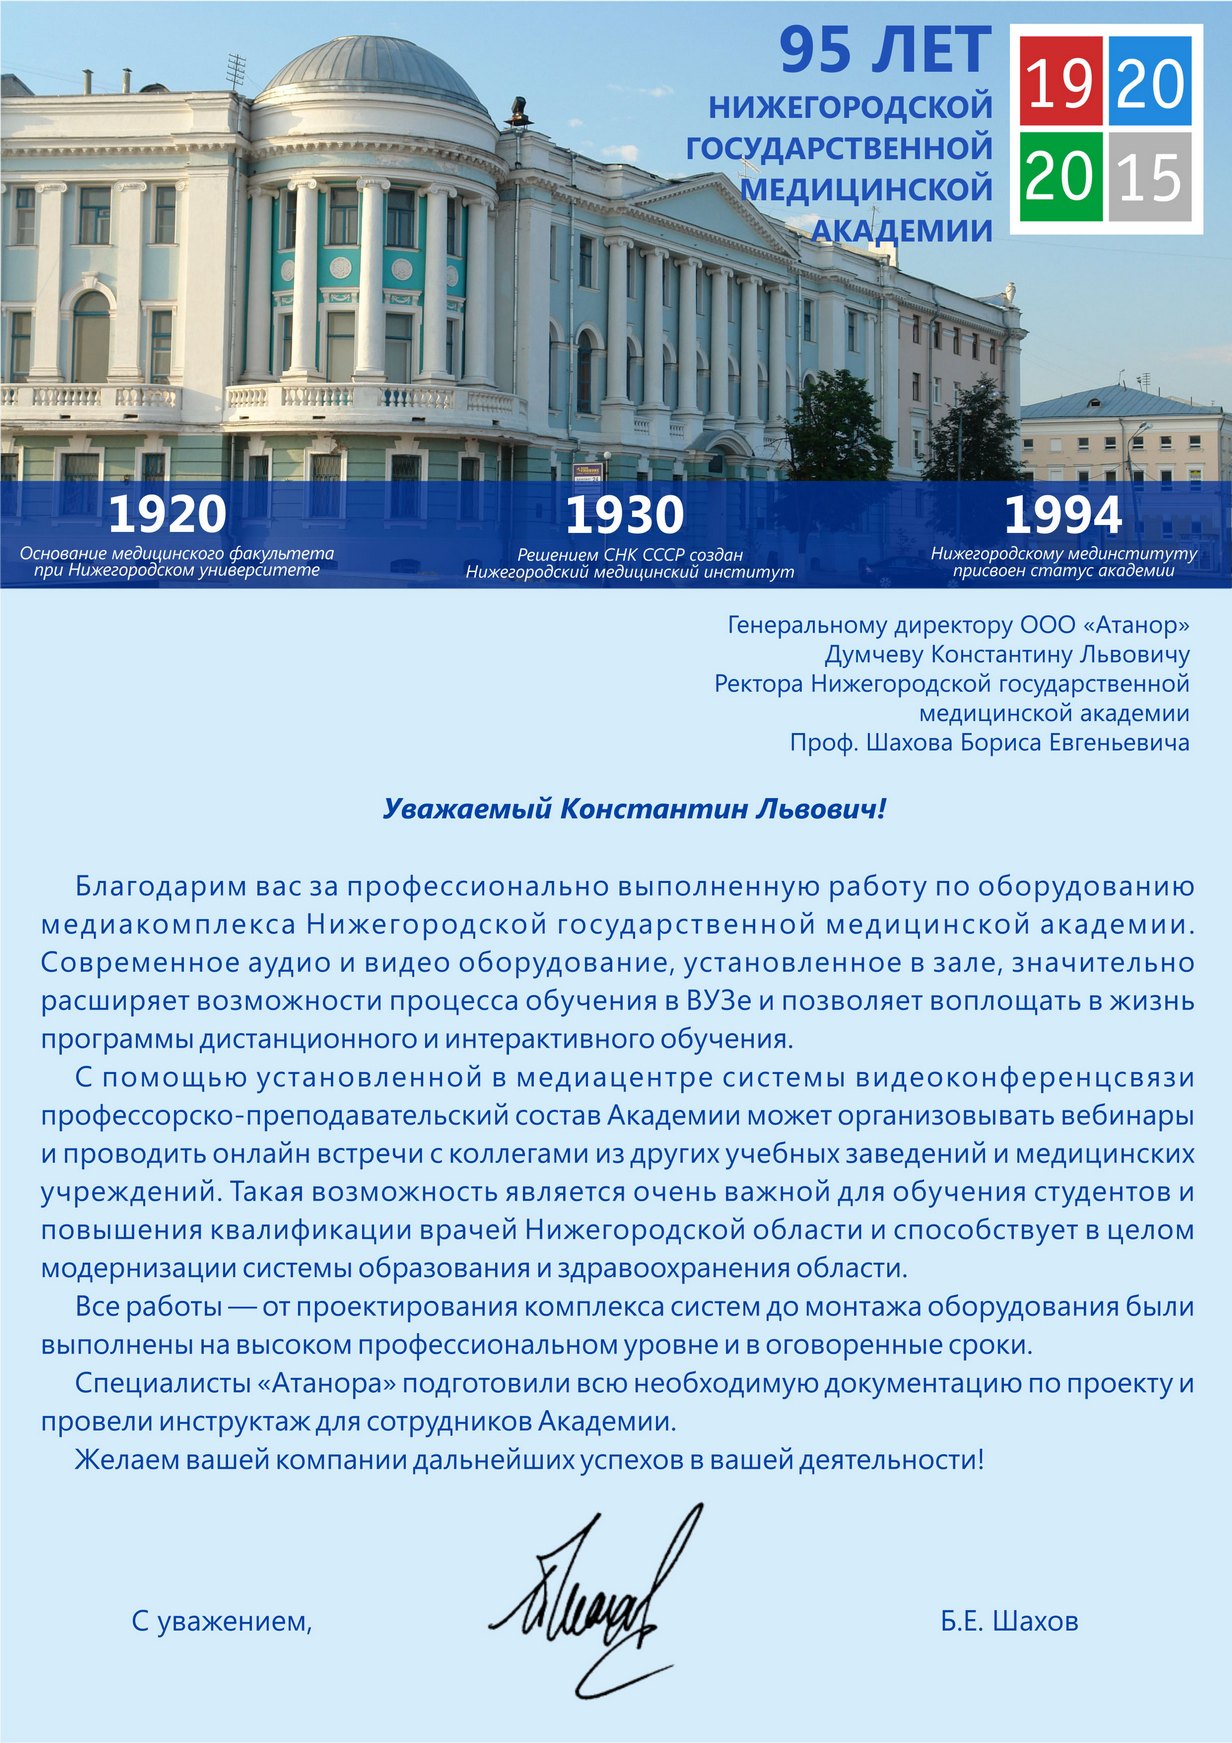 Нижегородская государственная медицинская академия